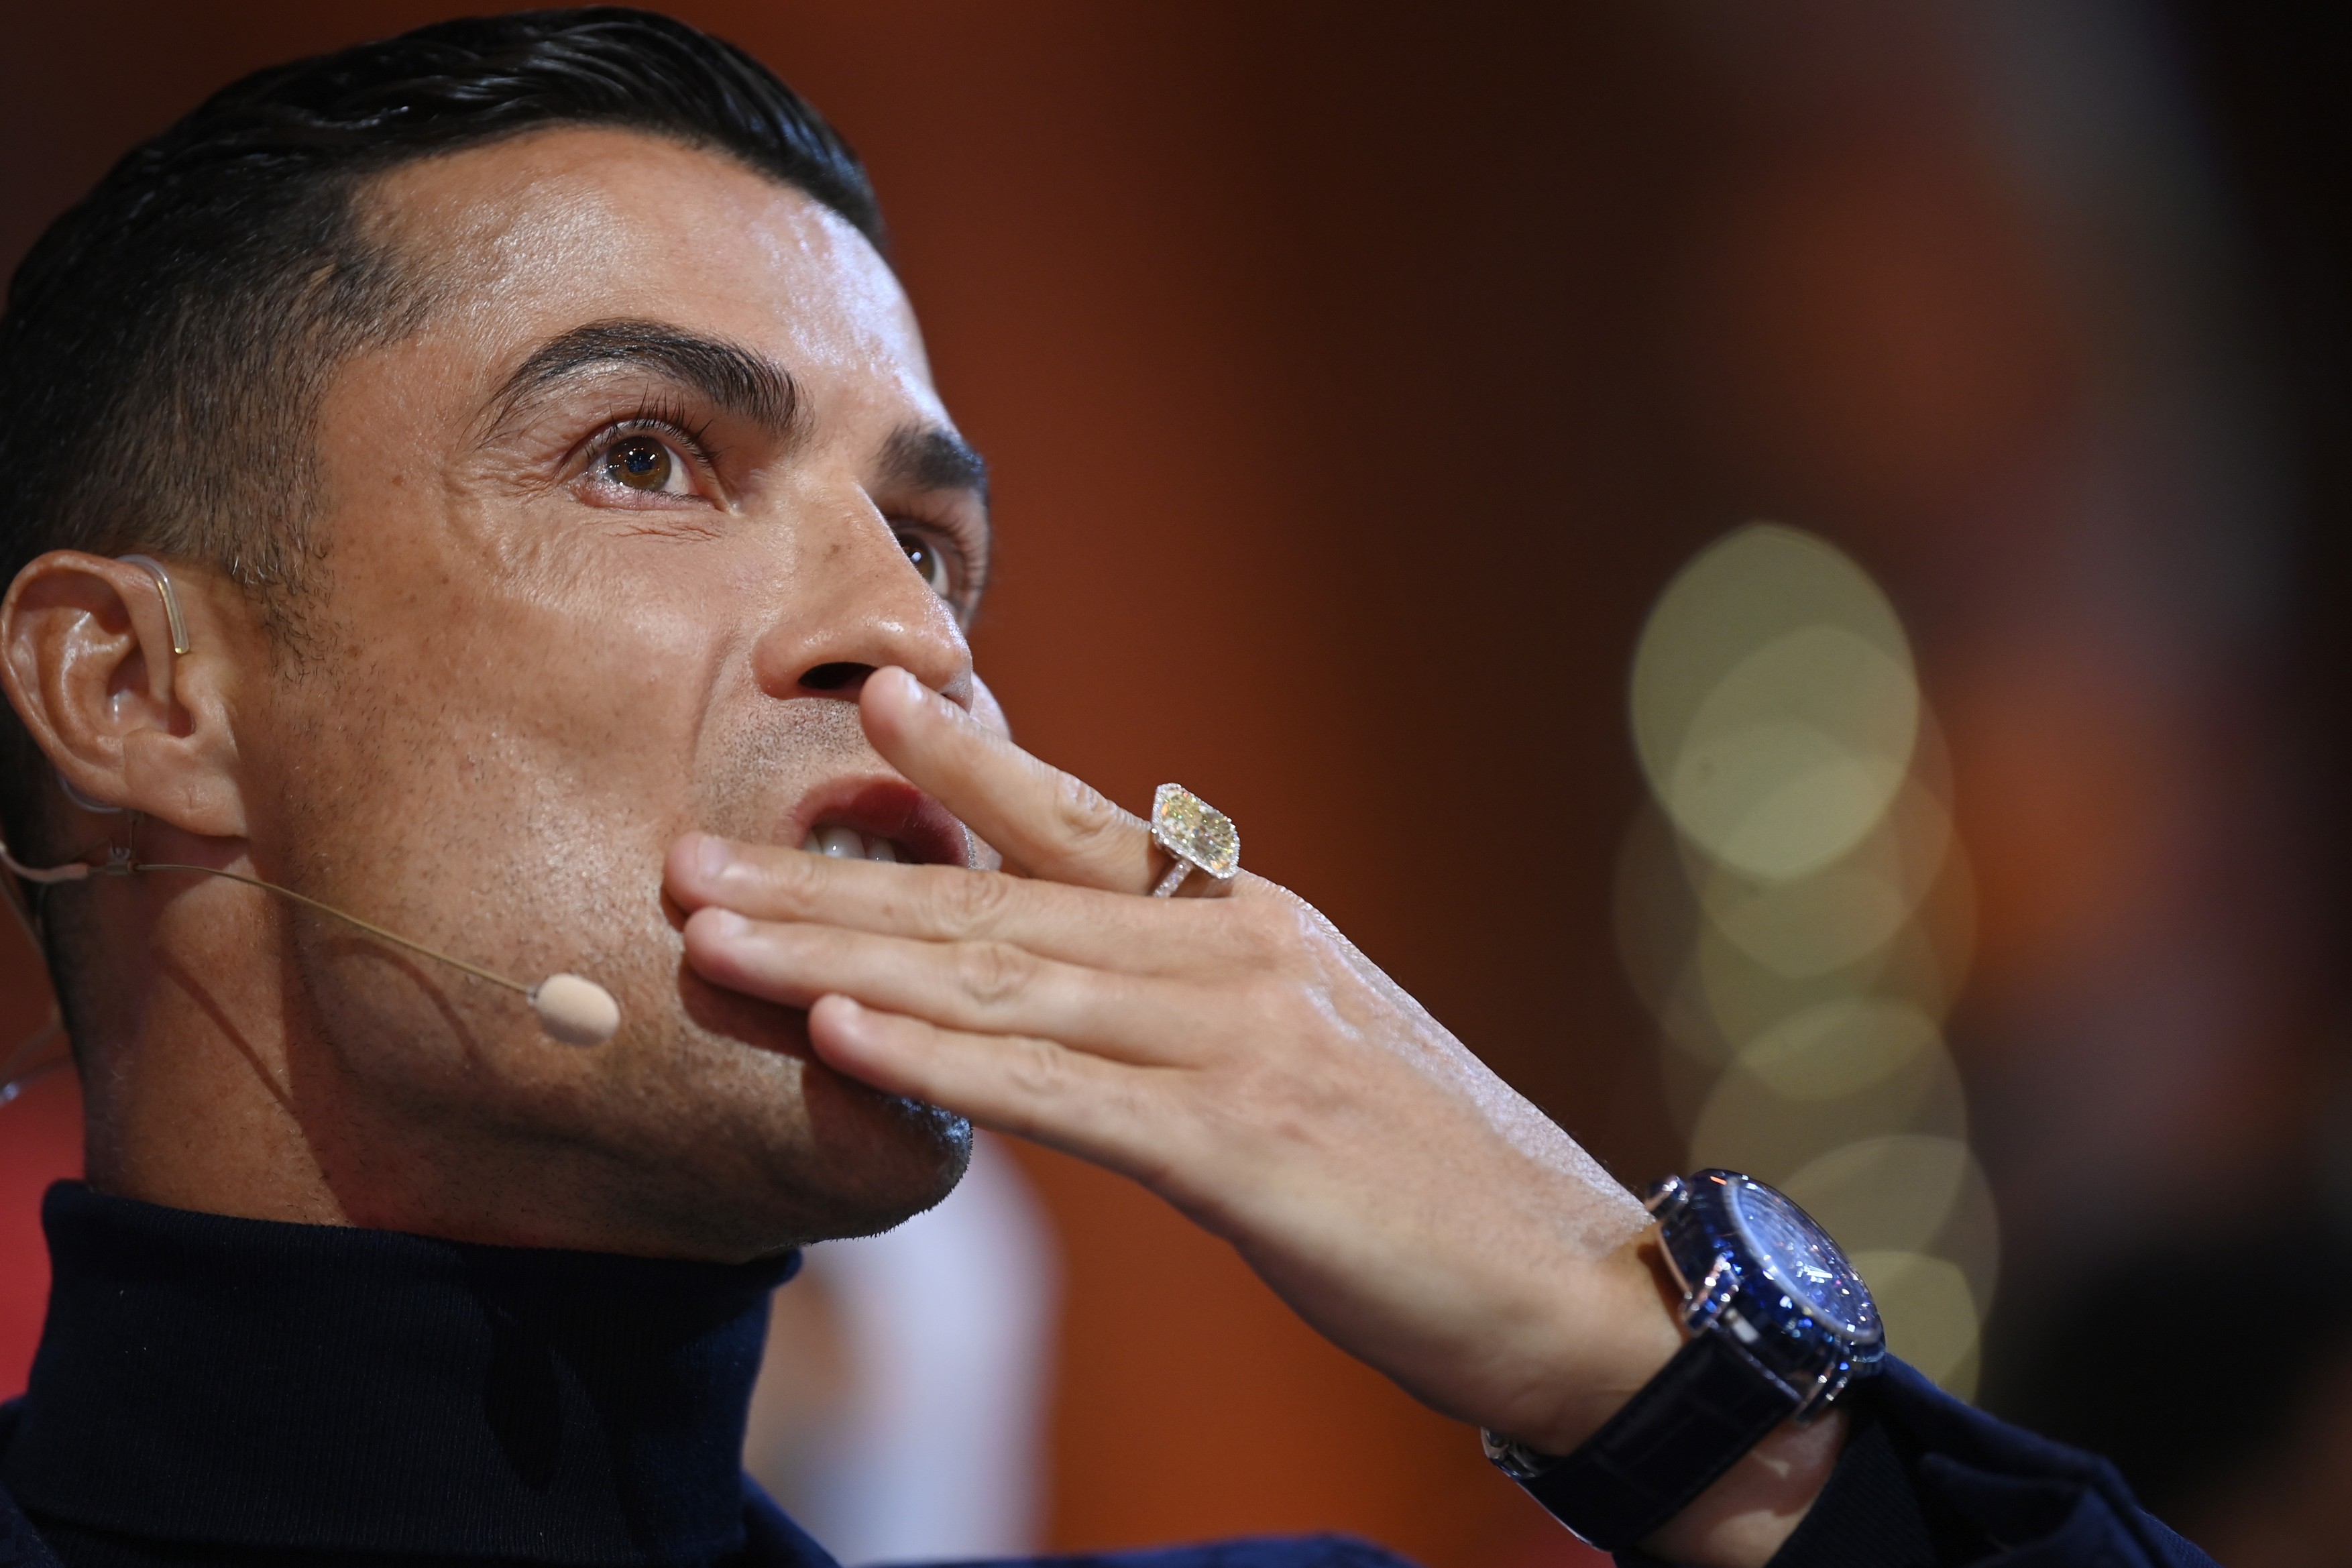 De cât timp are nevoie Cristiano Ronaldo pentru a plăti amenda primită pentru gesturi obsecene